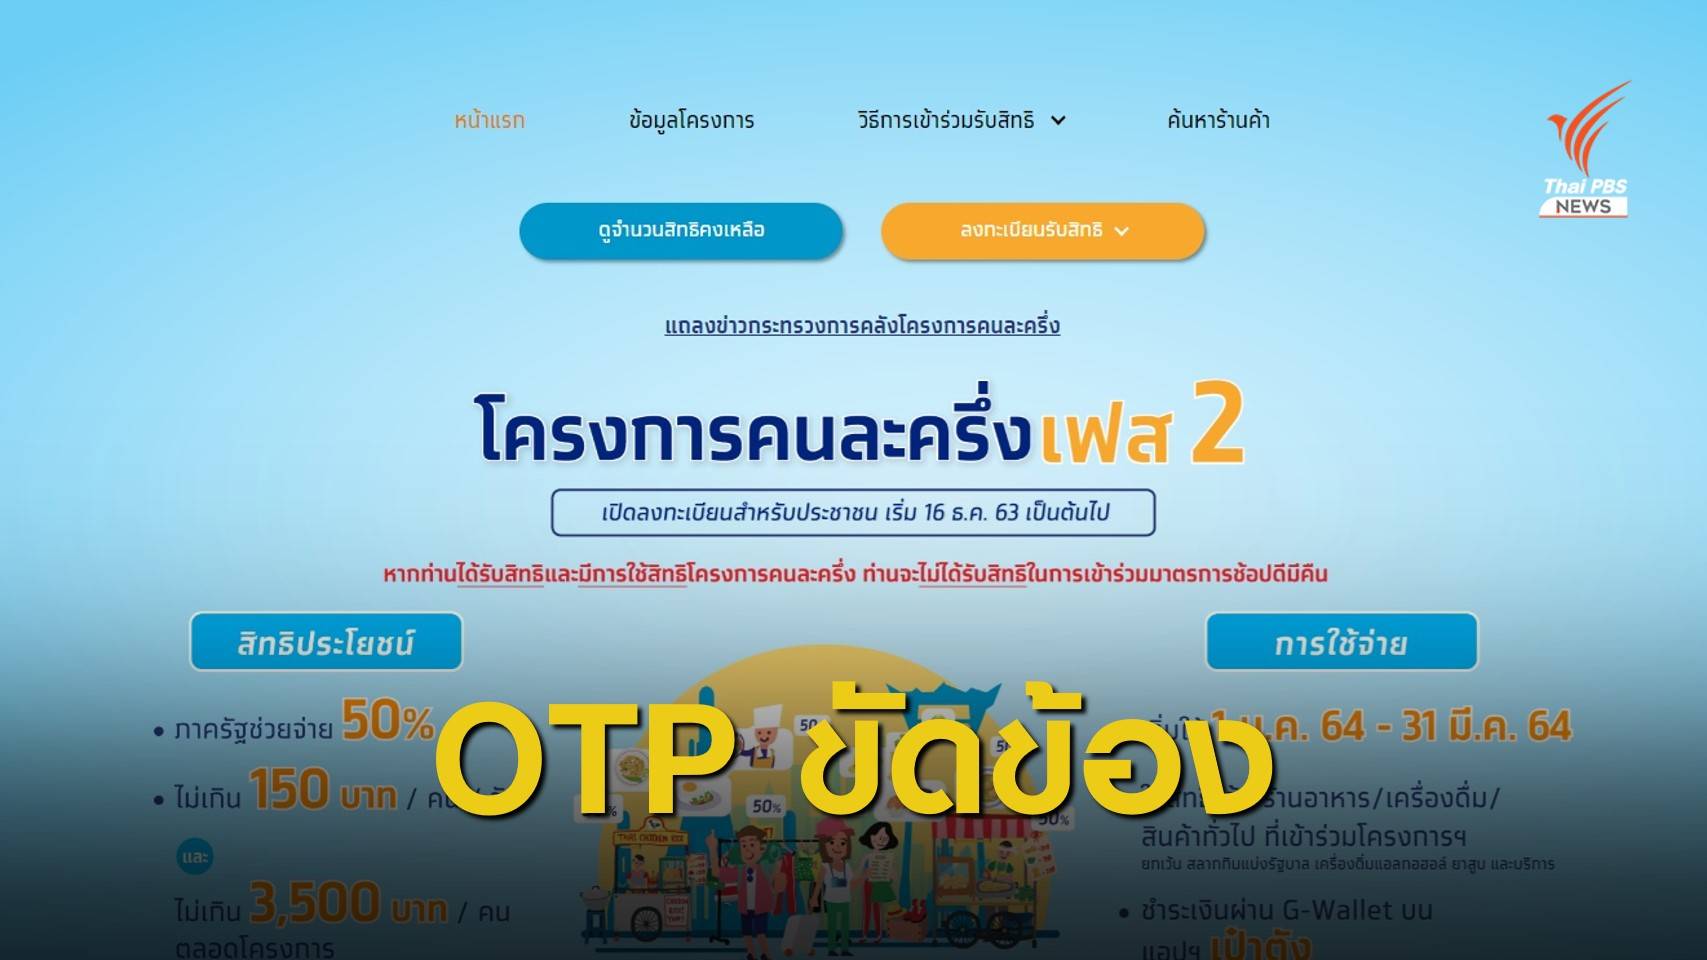 "คลัง" จี้ธนาคารกรุงไทยชี้แจงปัญหาลงทะเบียน #คนละครึ่งเฟส2